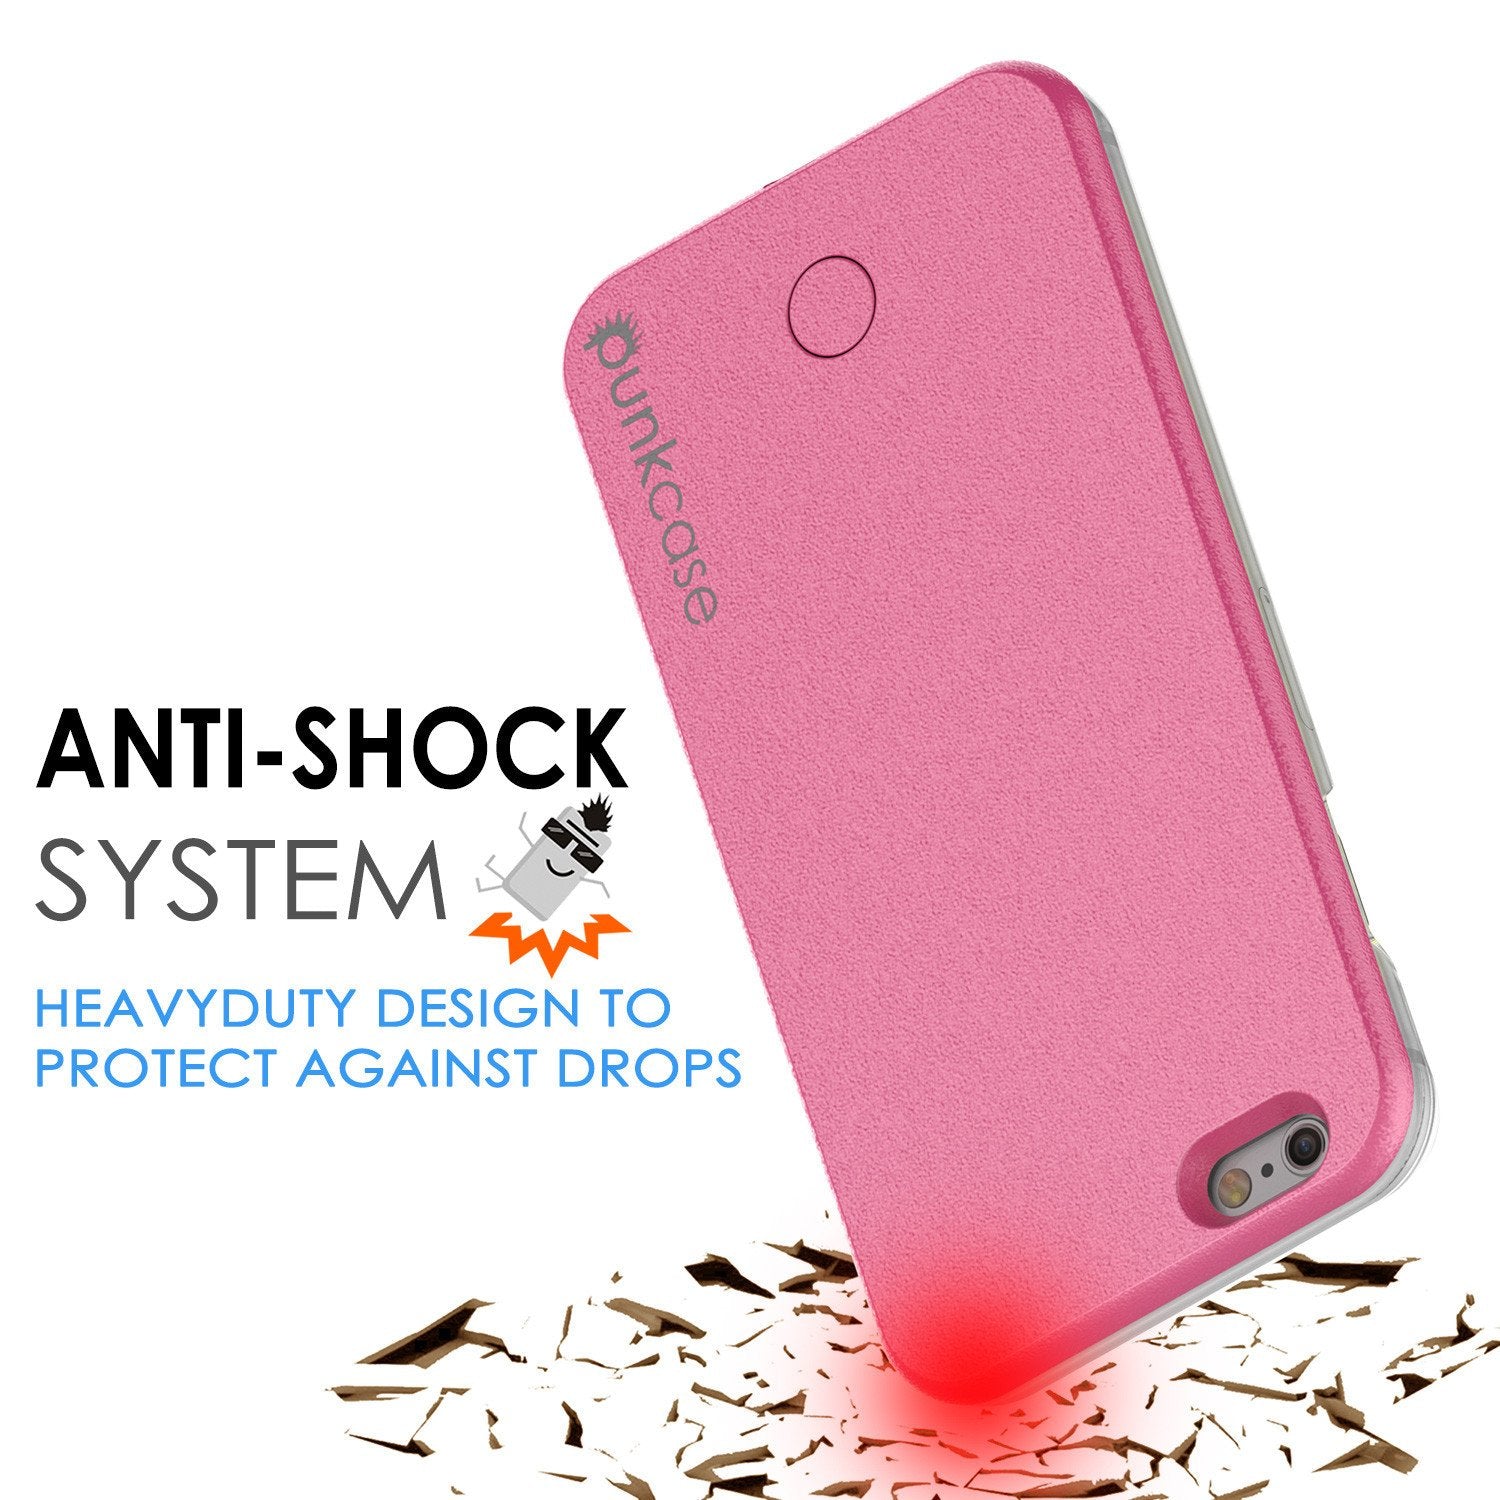 iPhone 6/6S Punkcase LED Light Case Light Illuminated Case, Pink  W/  Battery Power Bank